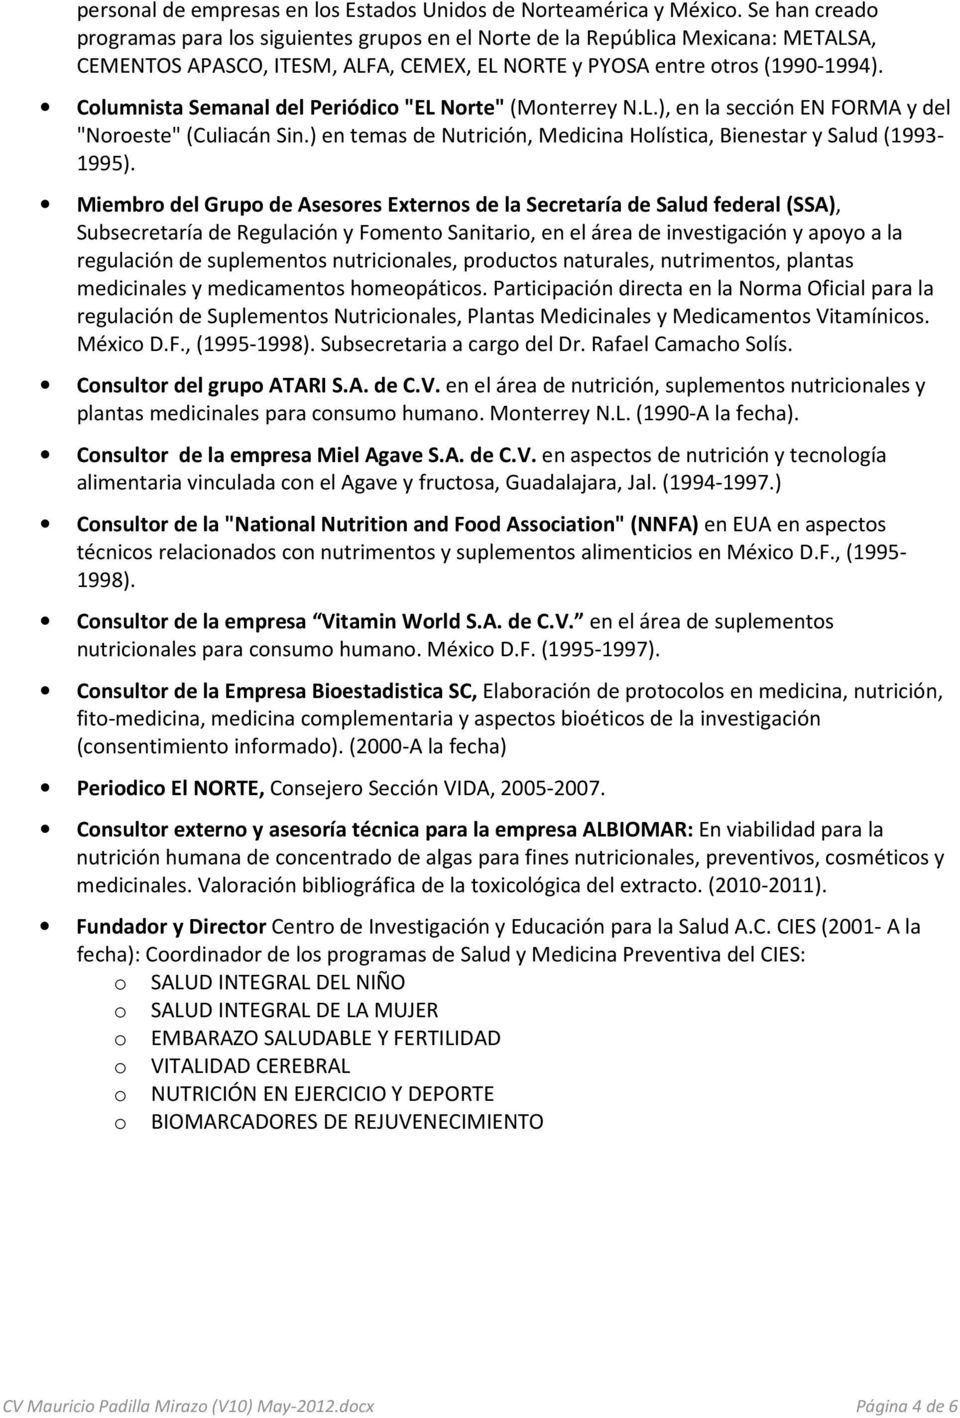 Columnista Semanal del Periódico "EL Norte" (Monterrey N.L.), en la sección EN FORMA y del "Noroeste" (Culiacán Sin.) en temas de Nutrición, Medicina Holística, Bienestar y Salud (1993-1995).